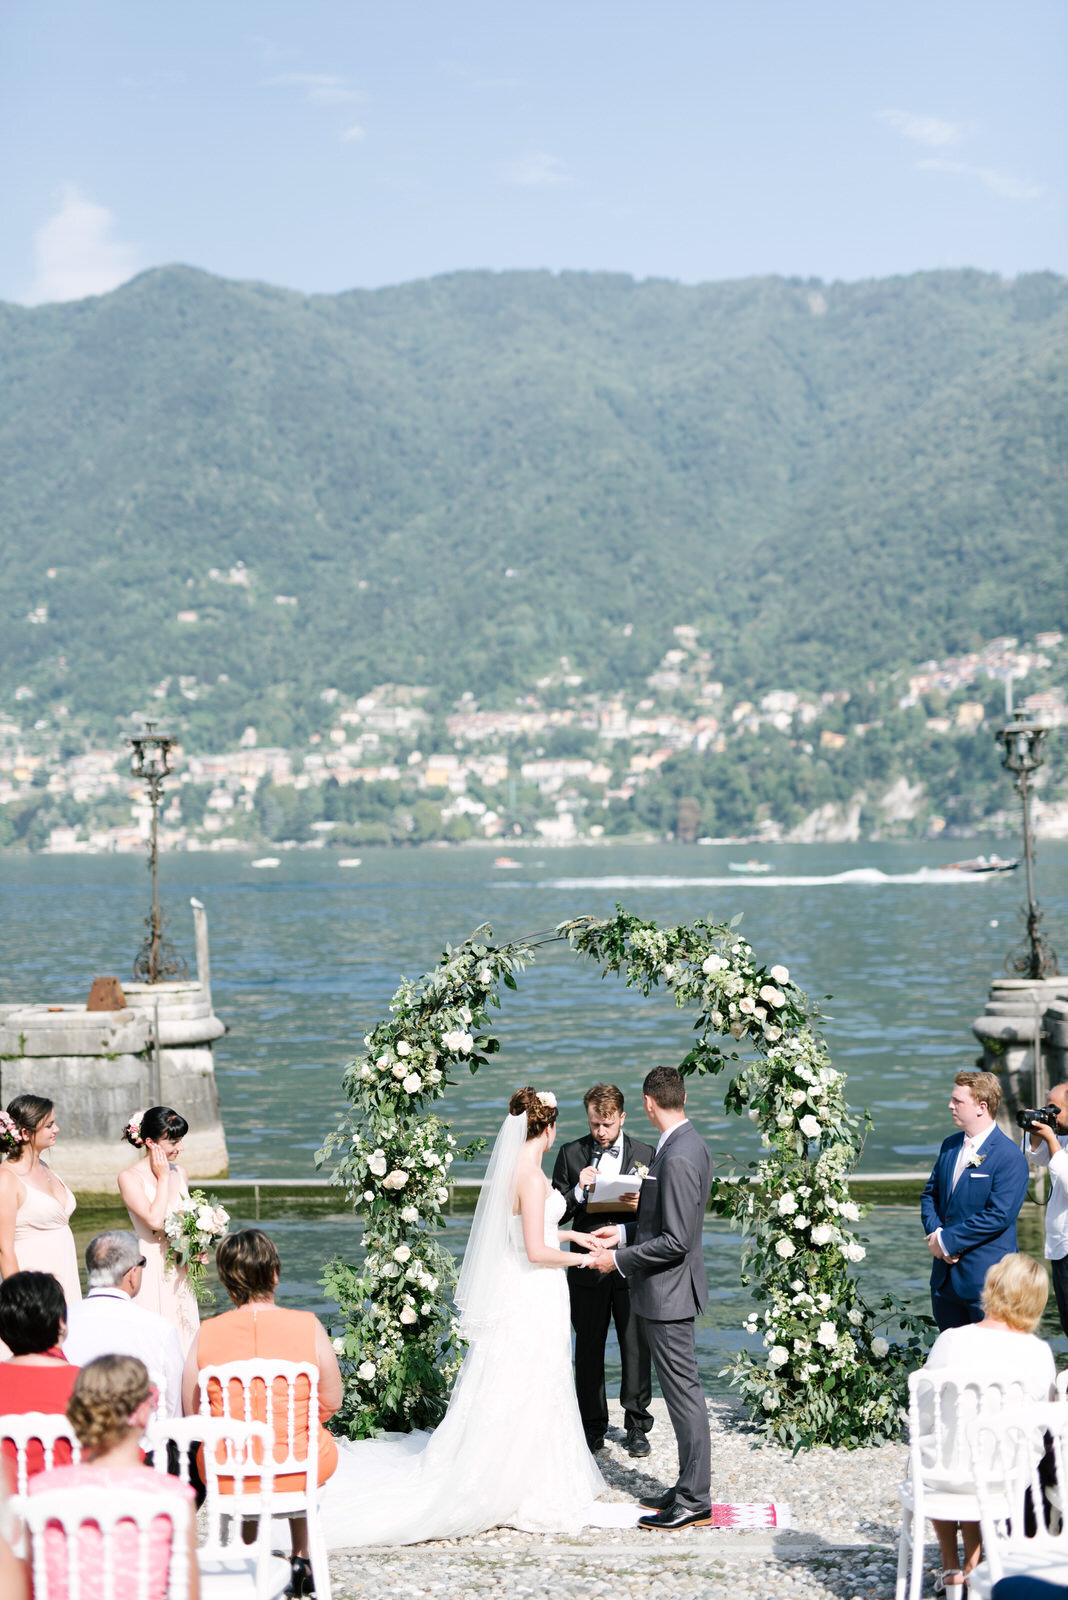 Wedding ceremony in lake como, villa erba